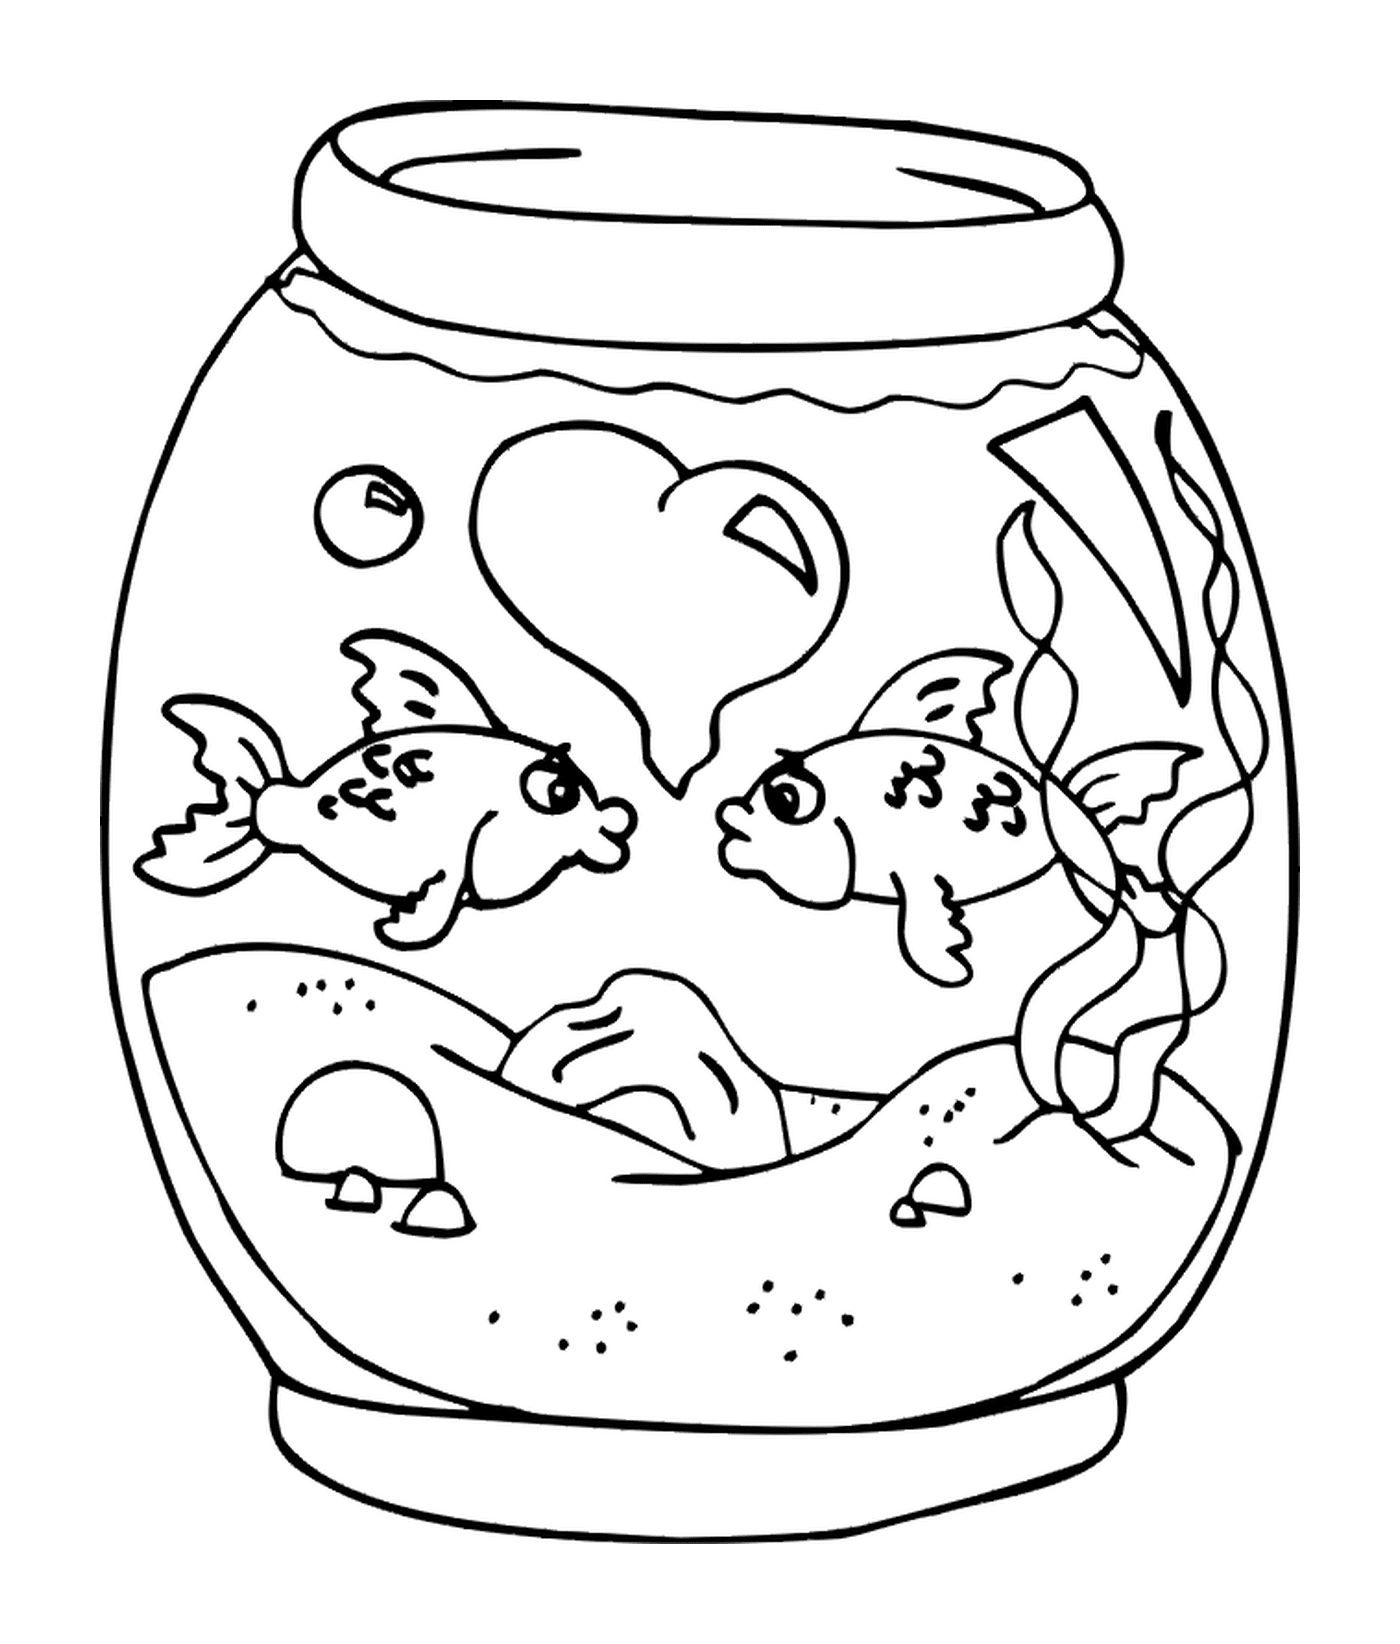  Peixe em uma jarra 